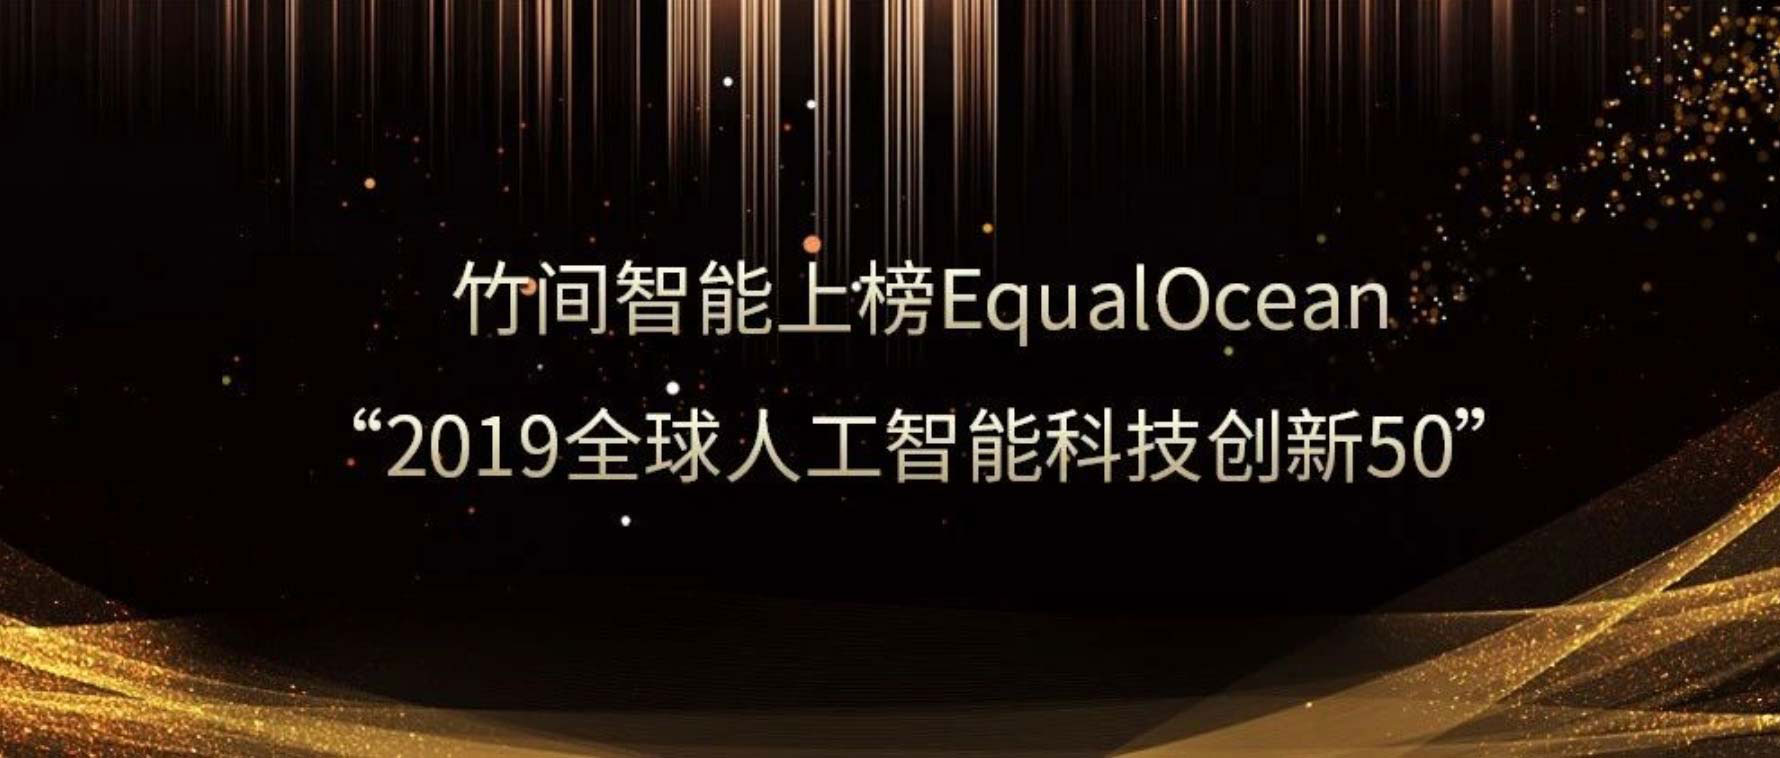 竹间智能上榜EqualOcean“2019全球人工智能科技创新50”